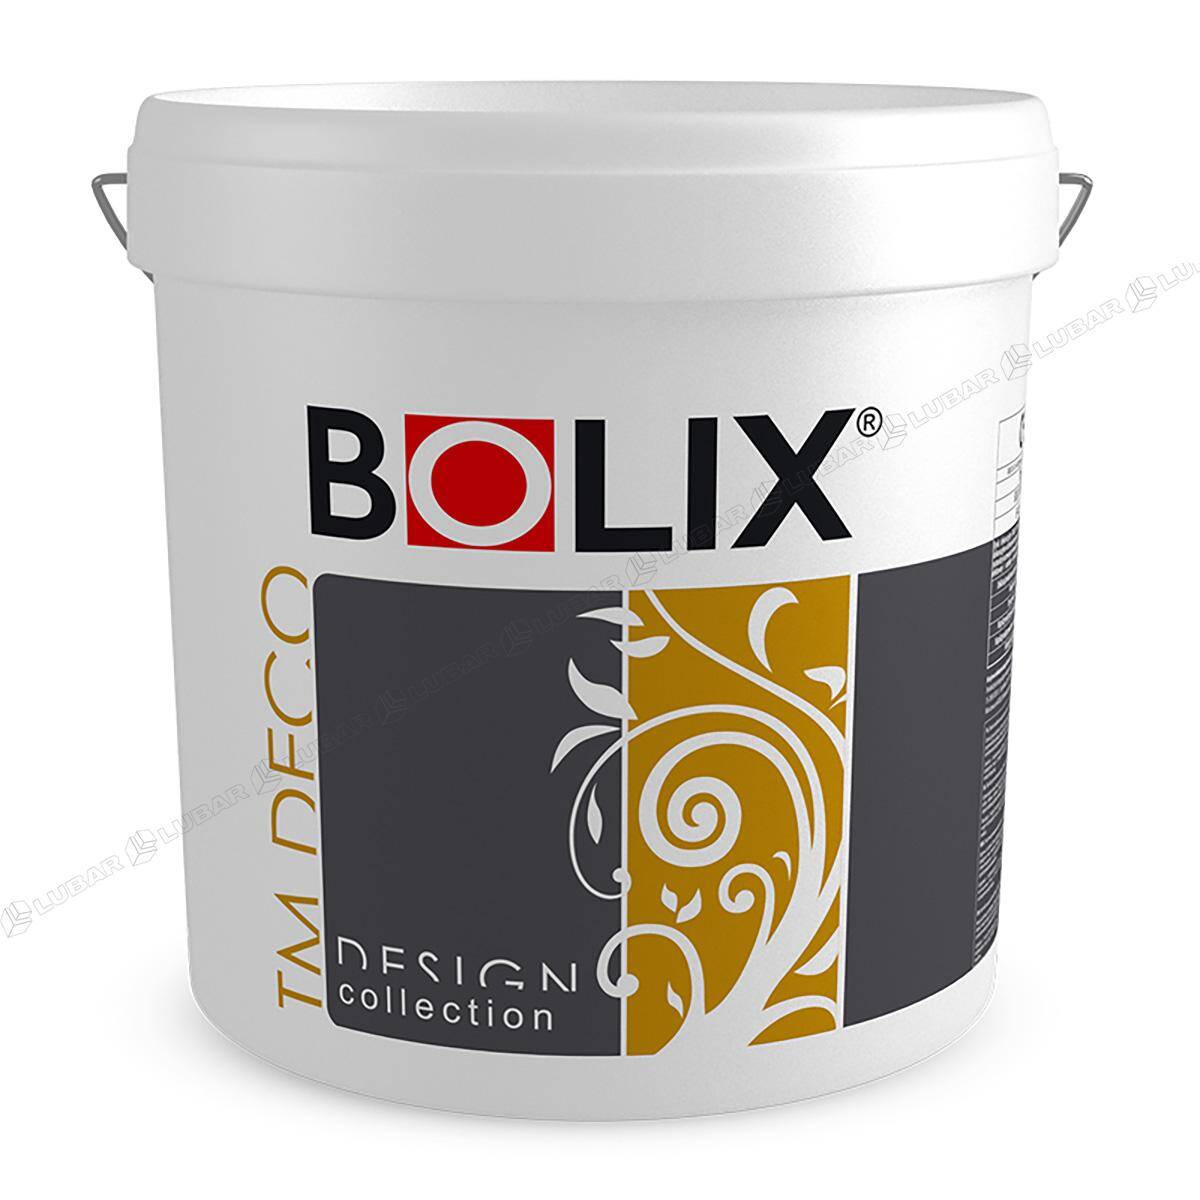 BOLIX TM DECO Tynk dekoracyjny z miką 25 kg